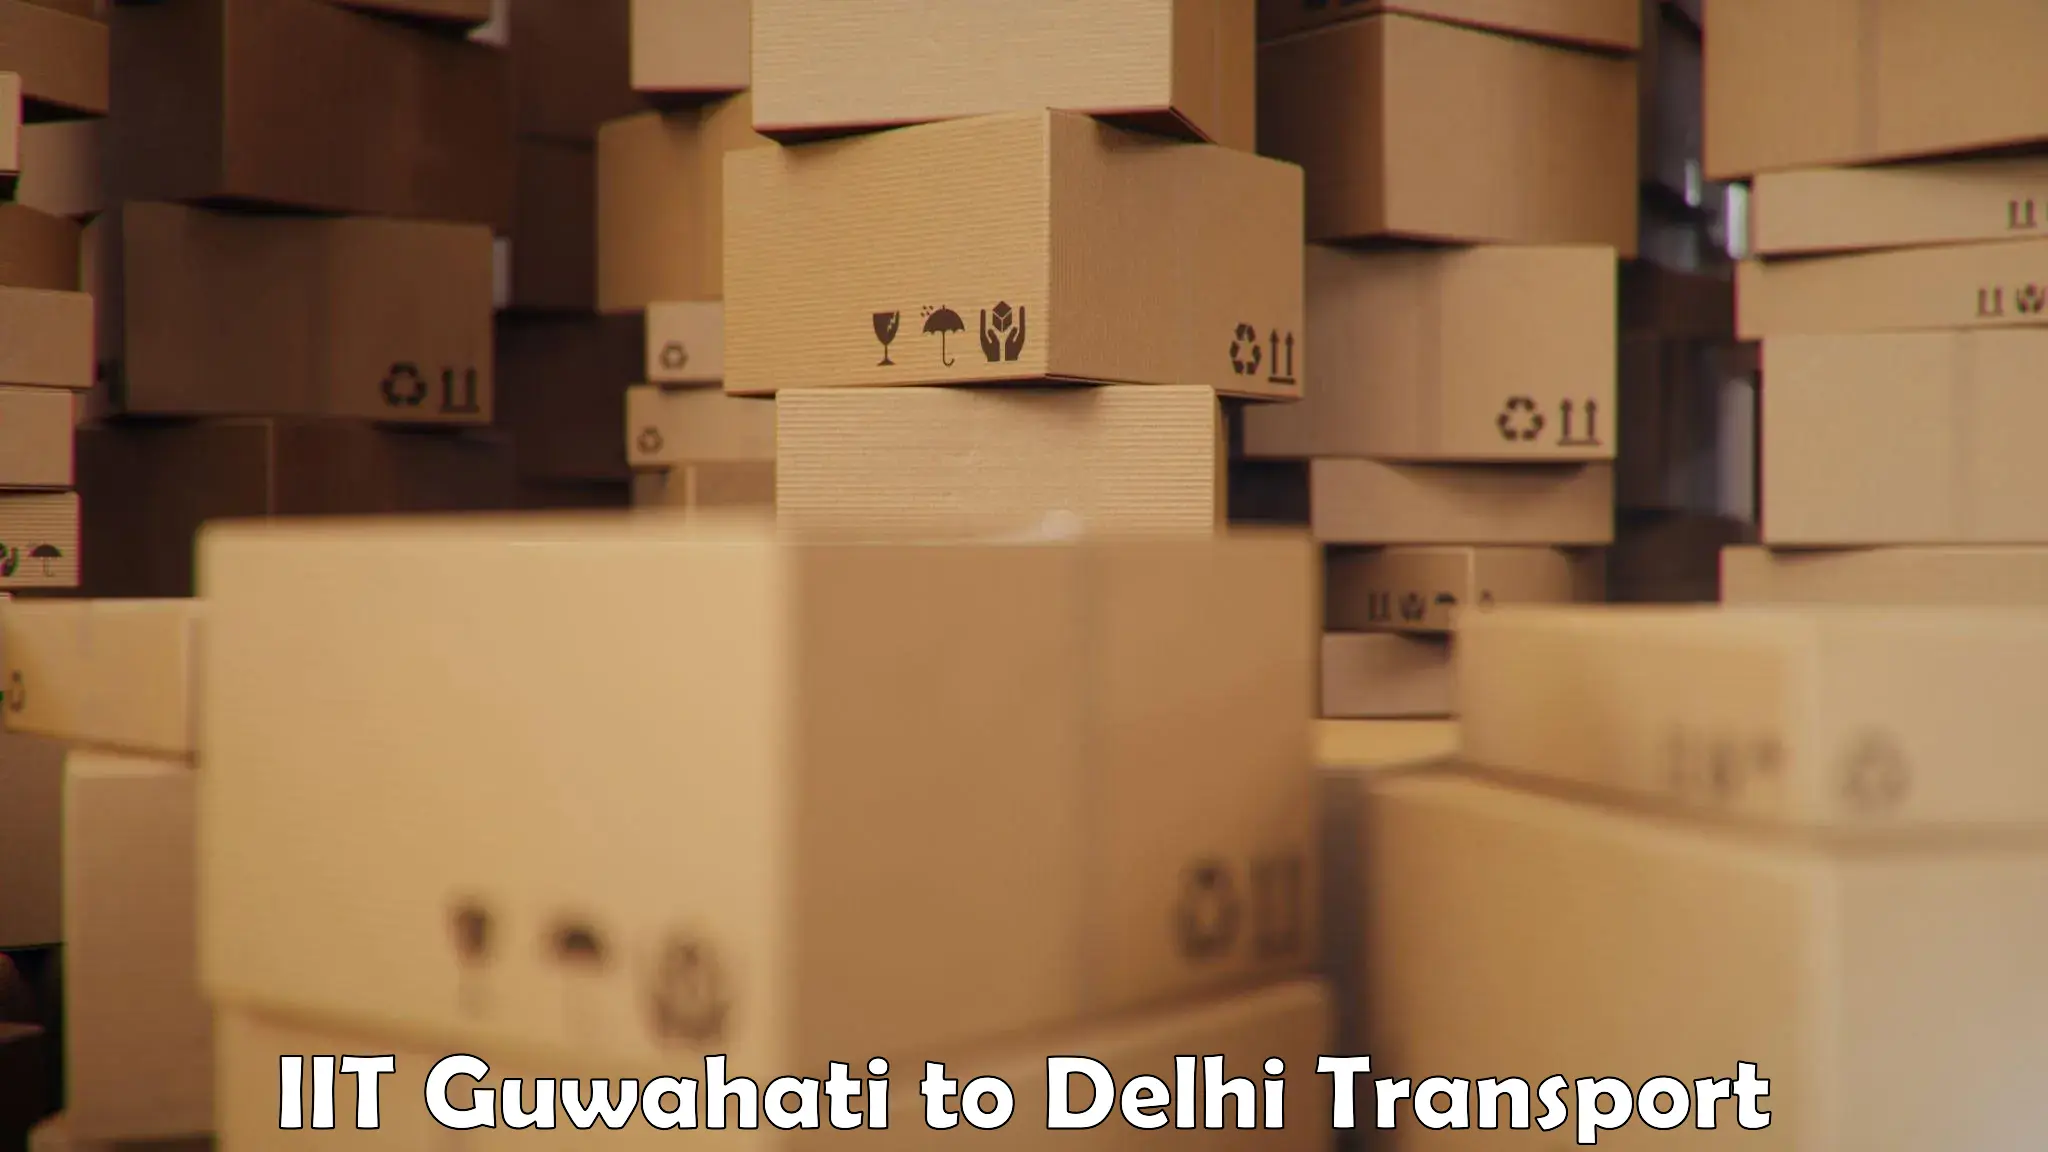 Nationwide transport services IIT Guwahati to IIT Delhi